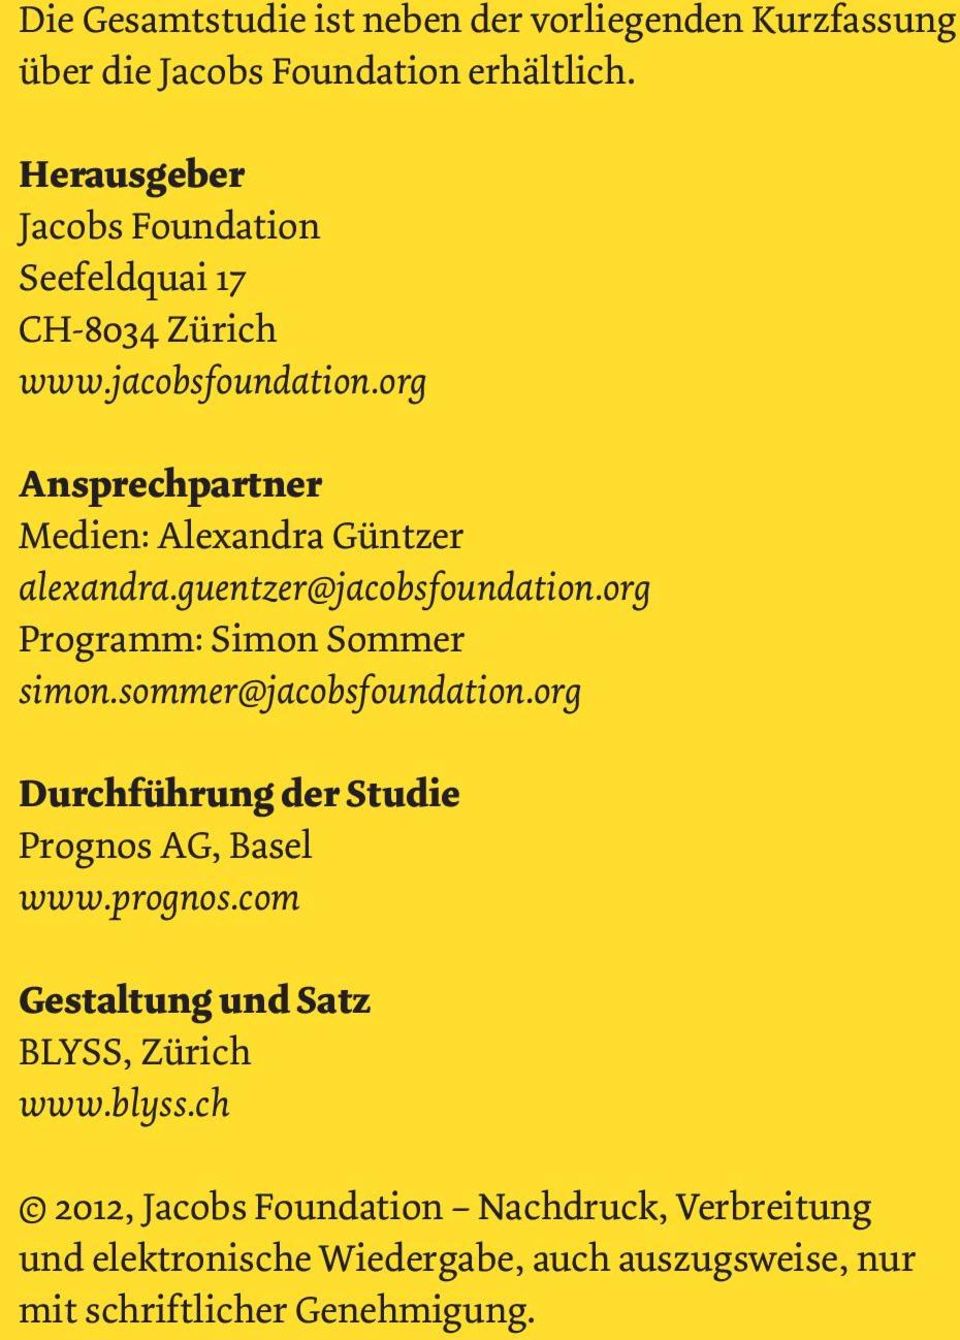 guentzer@jacobsfoundation.org Programm: Simon Sommer simon.sommer@jacobsfoundation.org Durchführung der Studie Prognos AG, Basel www.prognos.